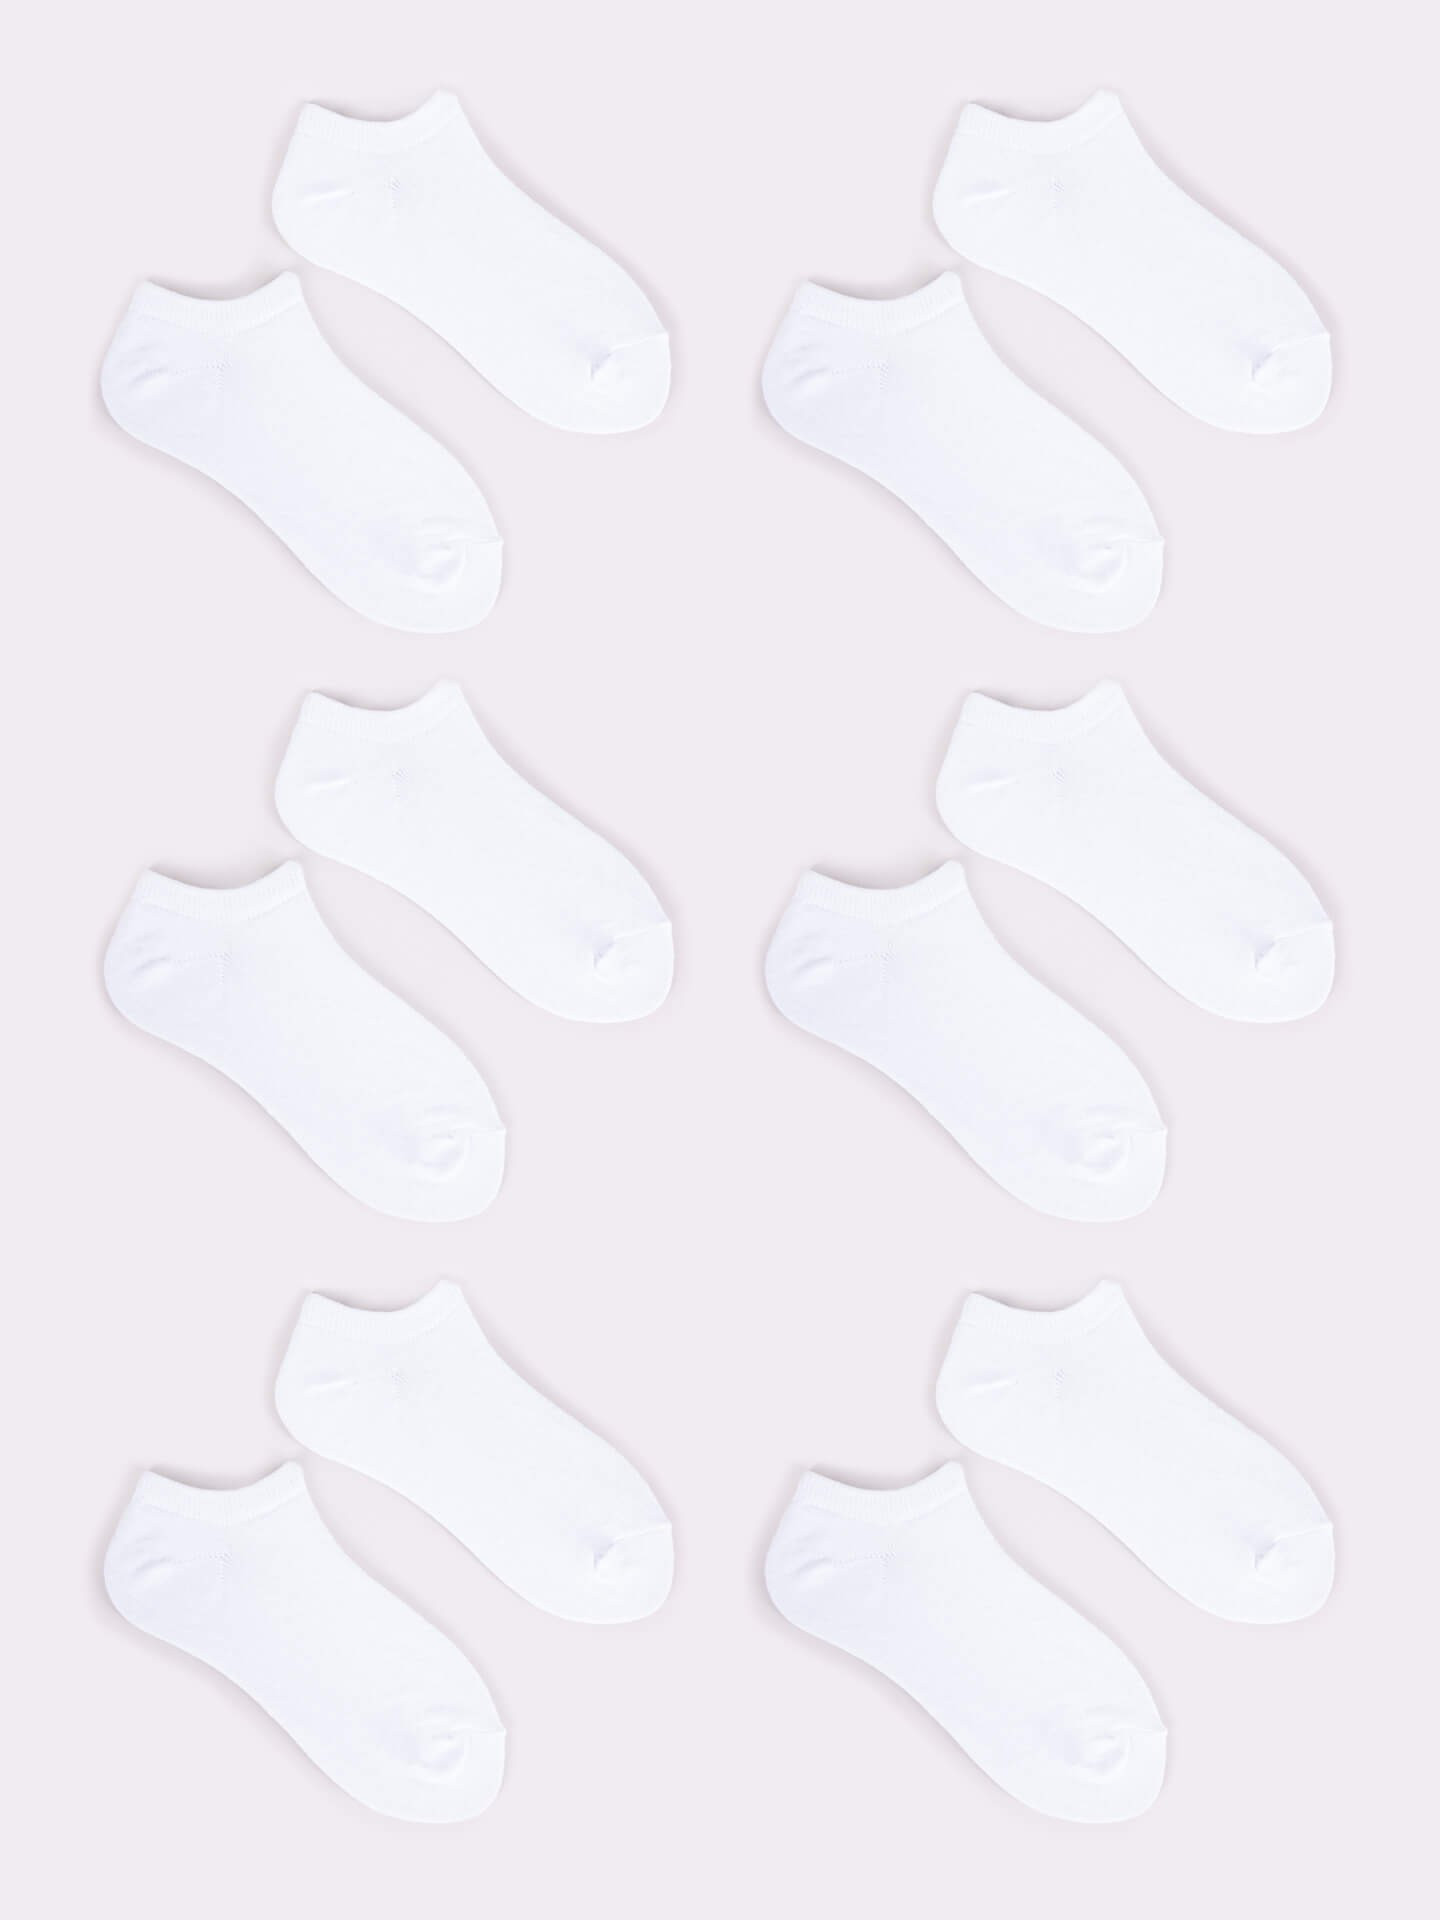 Yoclub 6Pack Základní kotníkové bílé ponožky SKS-0064U-0100-002 White 39-42